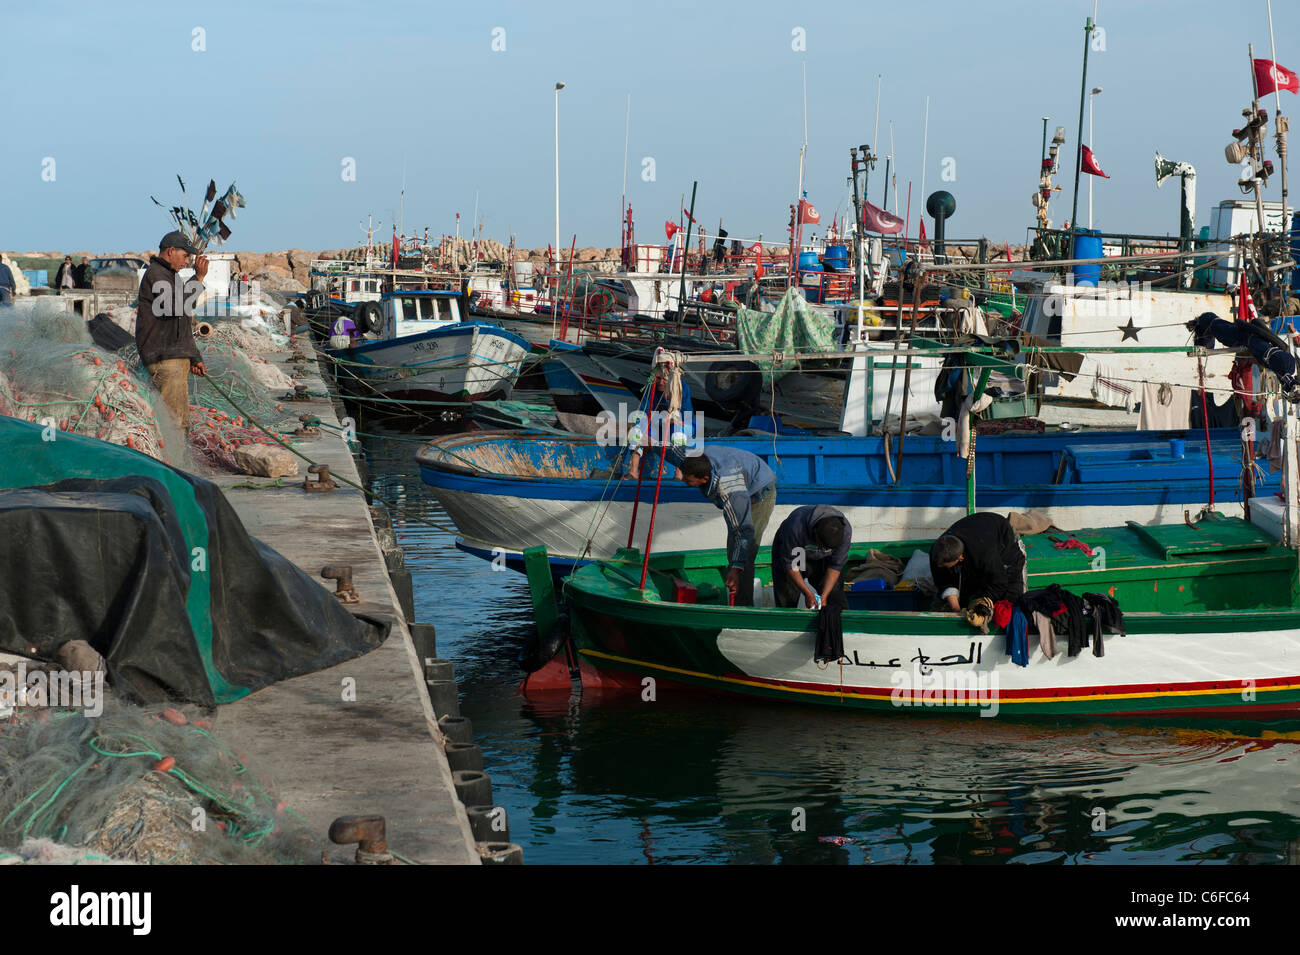 Pêcheur réparant leurs filets au port de pêche de Houmt Souk. Djerba. Tunisie Banque D'Images